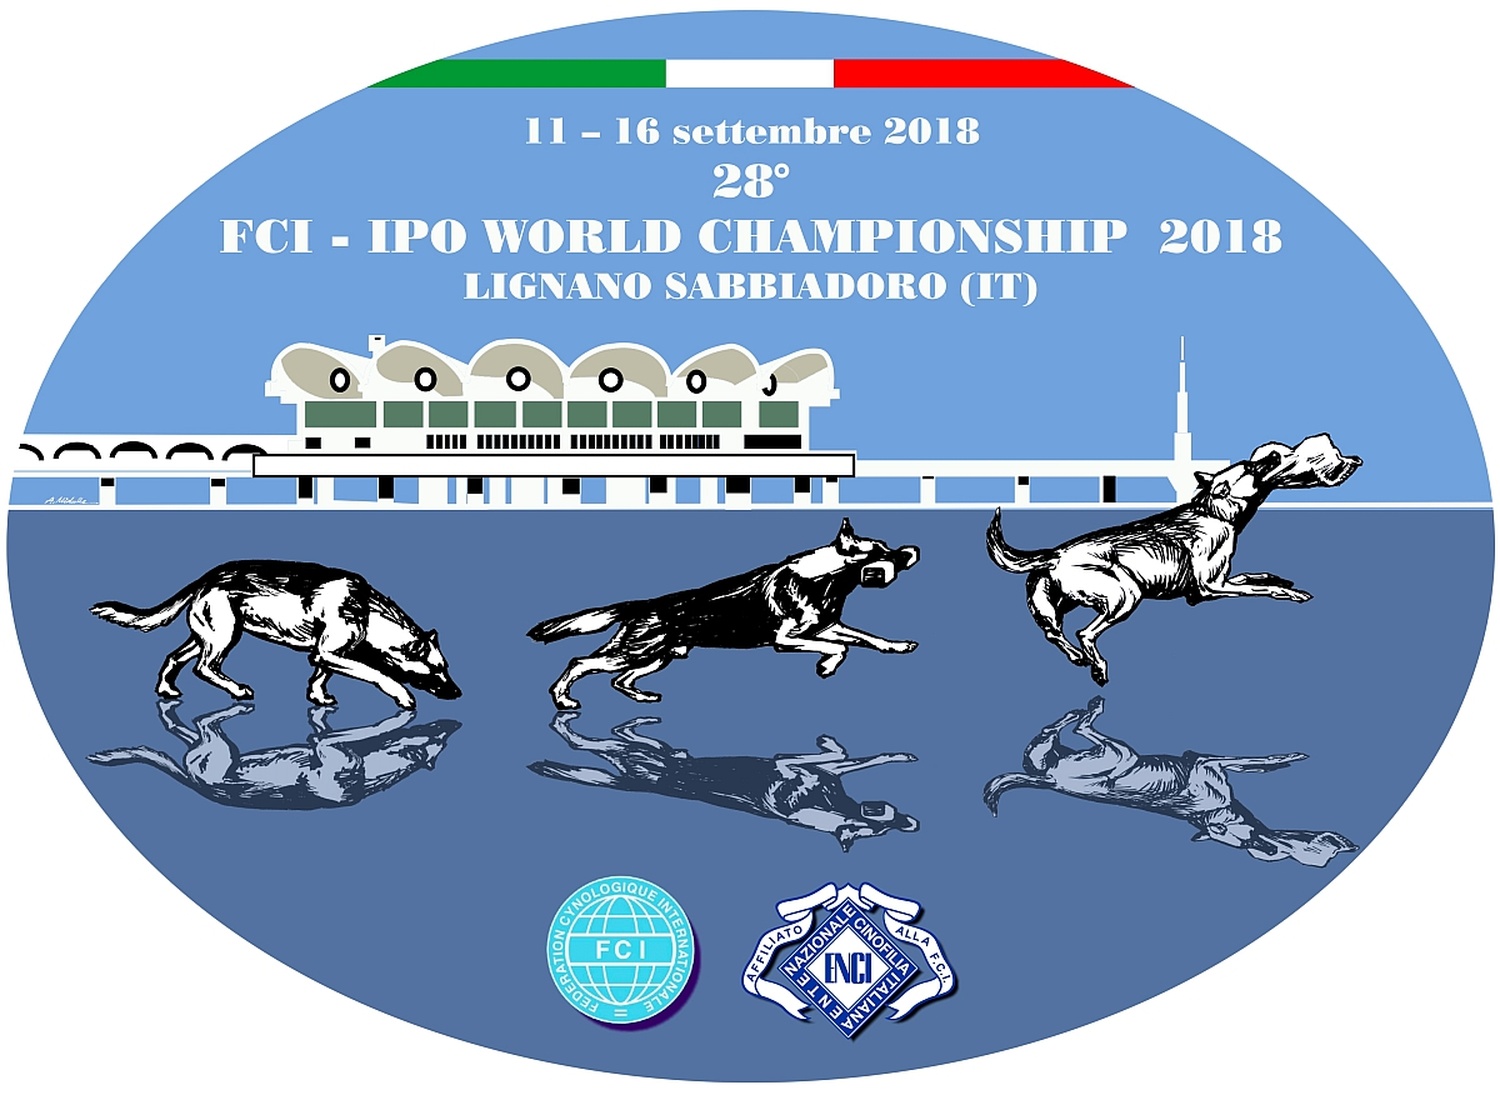 Fotos vonCampionato mondiale 2018 FCI - IPO Cani da difesa